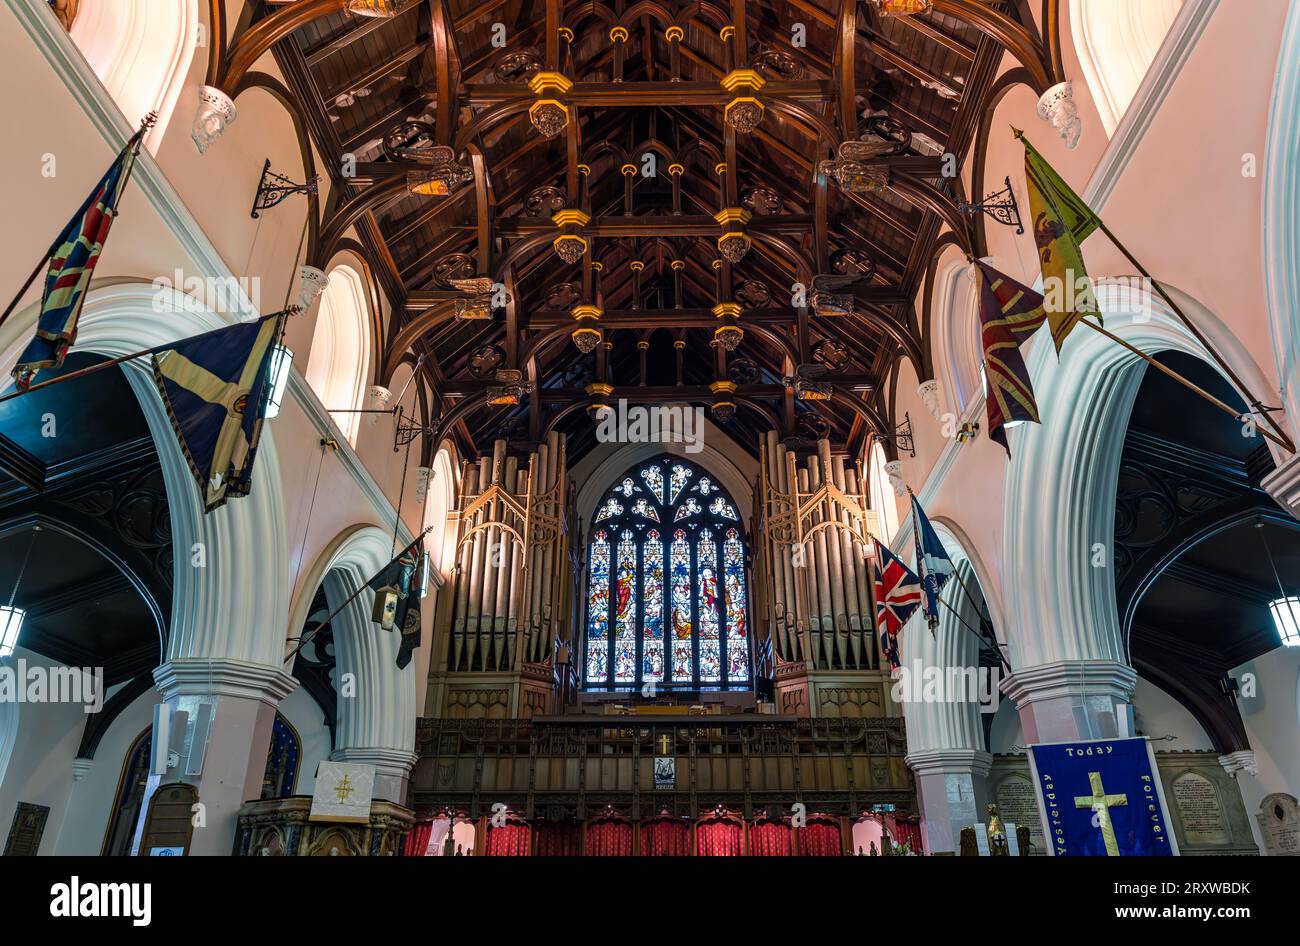 Vitrail, et plafond en bois de poutre de marteau de l'historique South Leith Parish Church, Leith, Édimbourg, Écosse, Royaume-Uni Banque D'Images